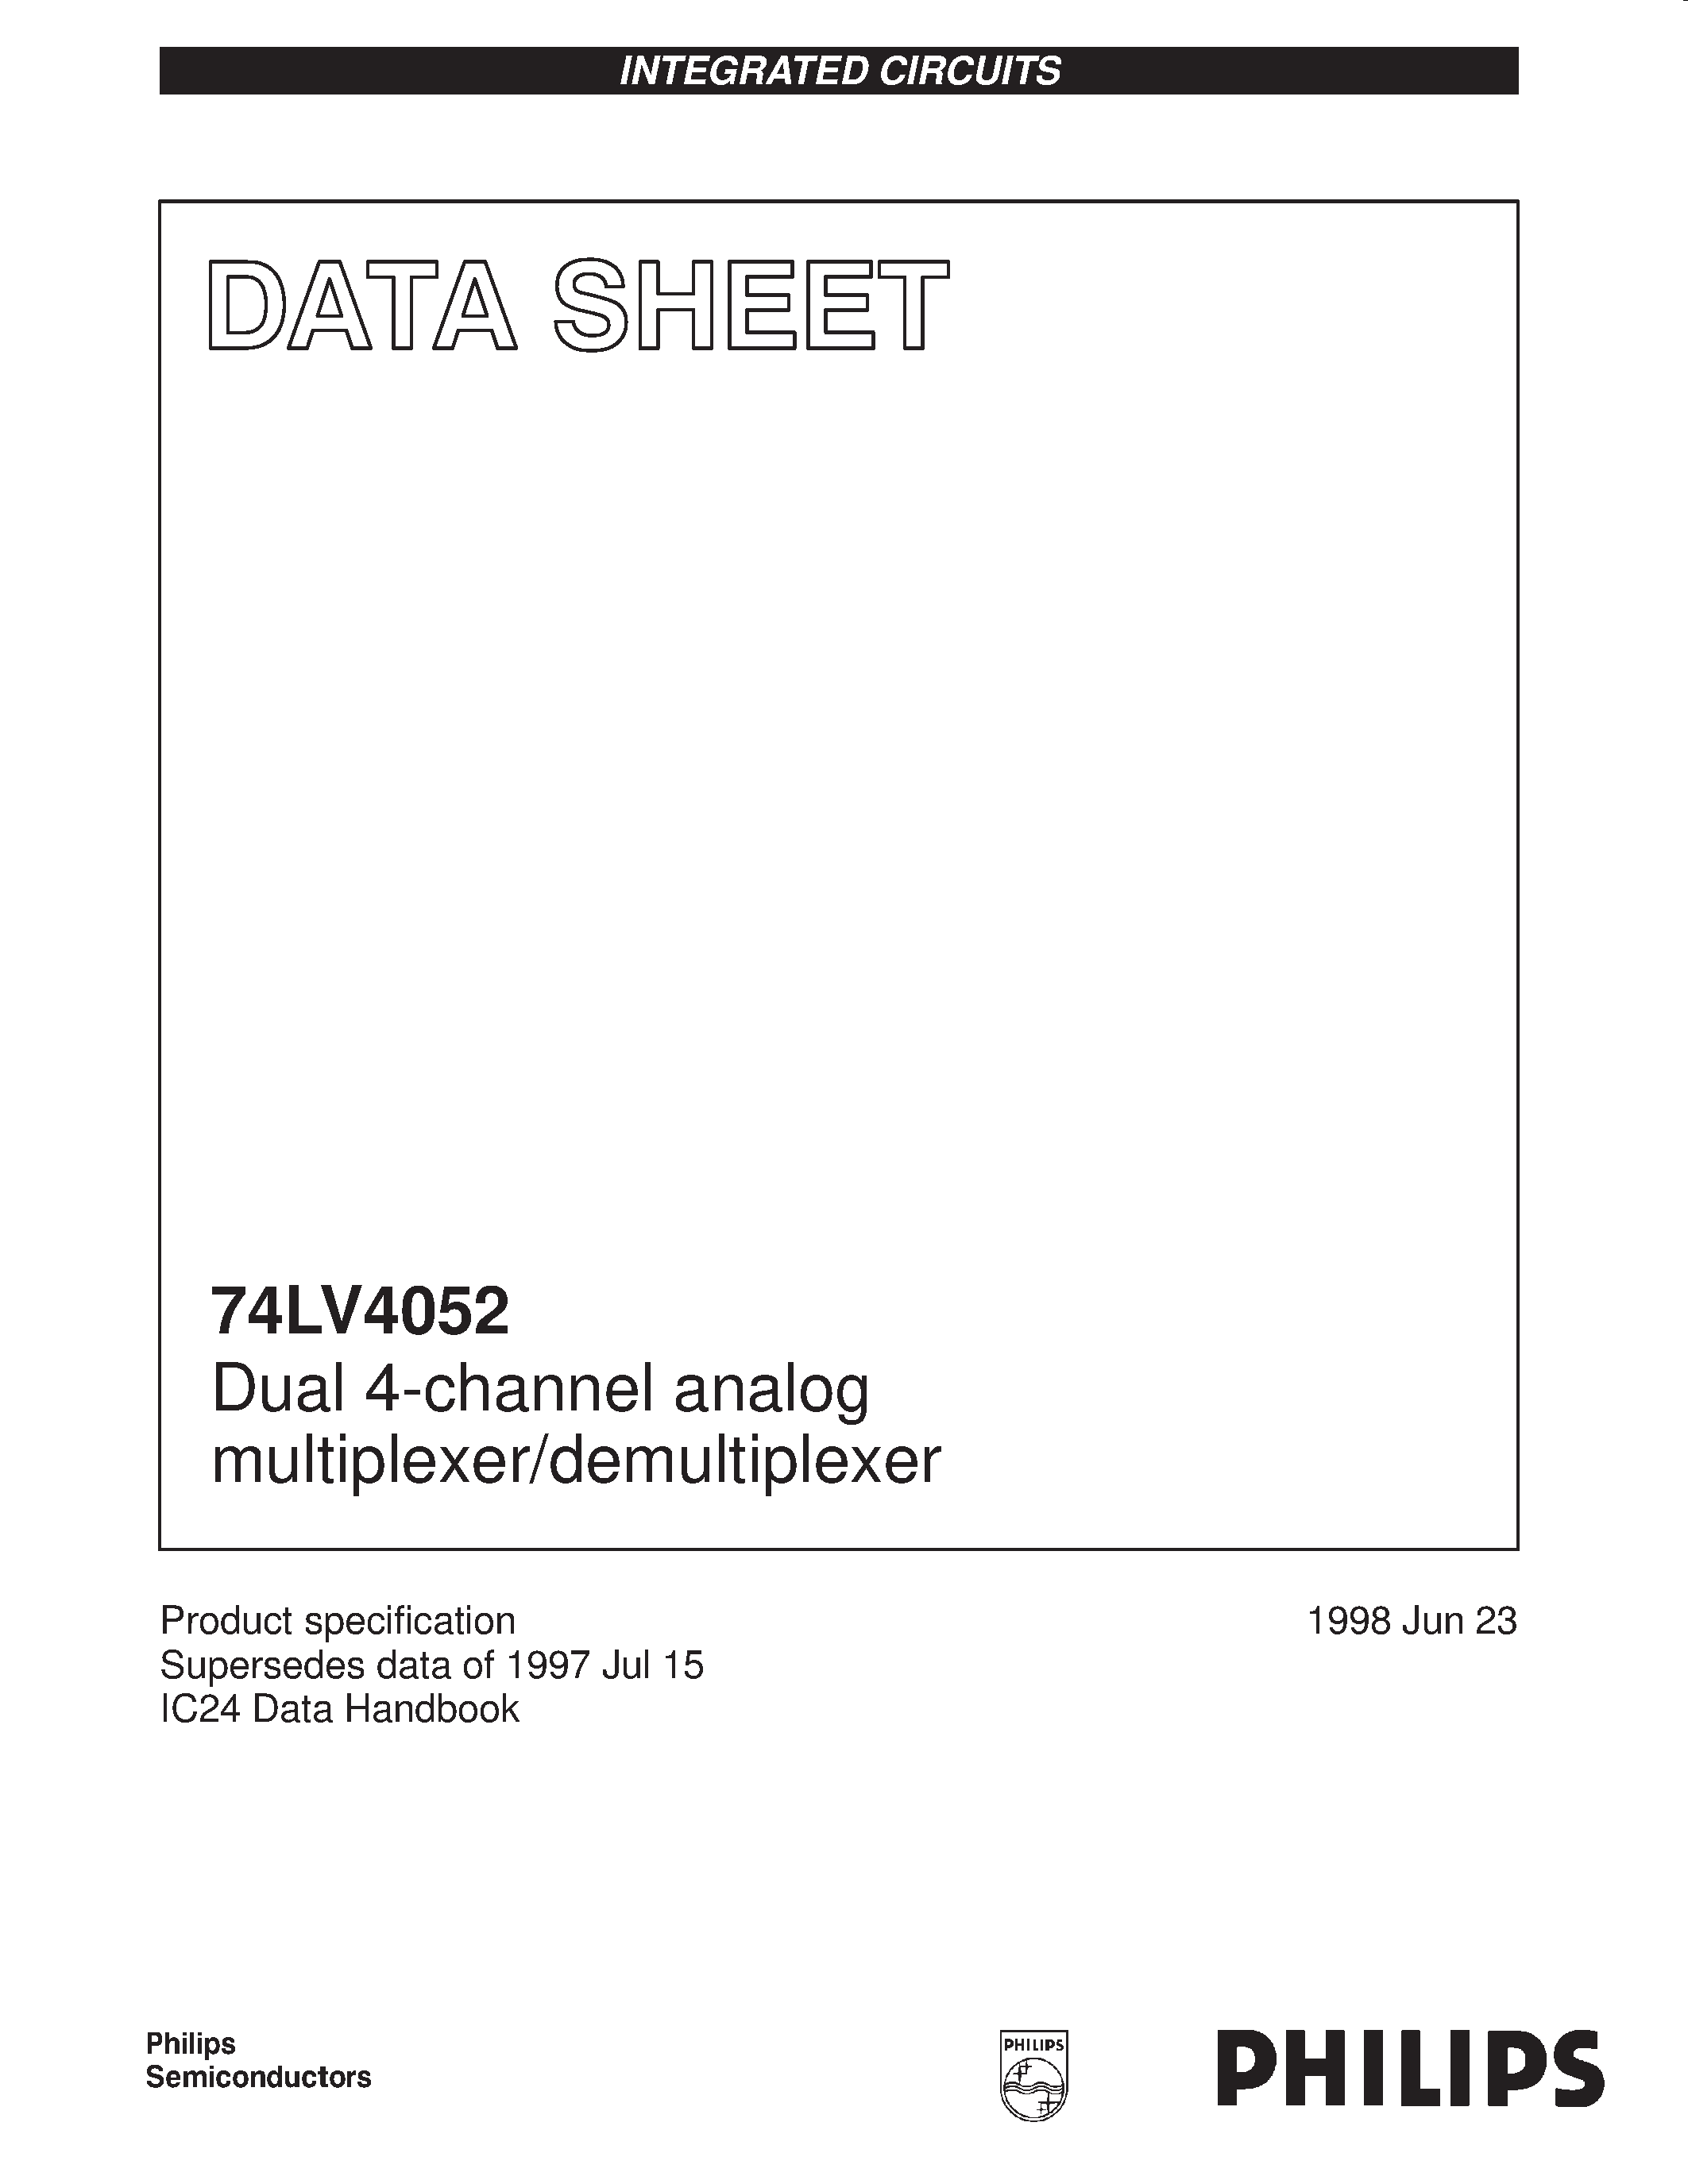 Даташит 74LV4052 - Dual 4-channel analog multiplexer/demultiplexer страница 1